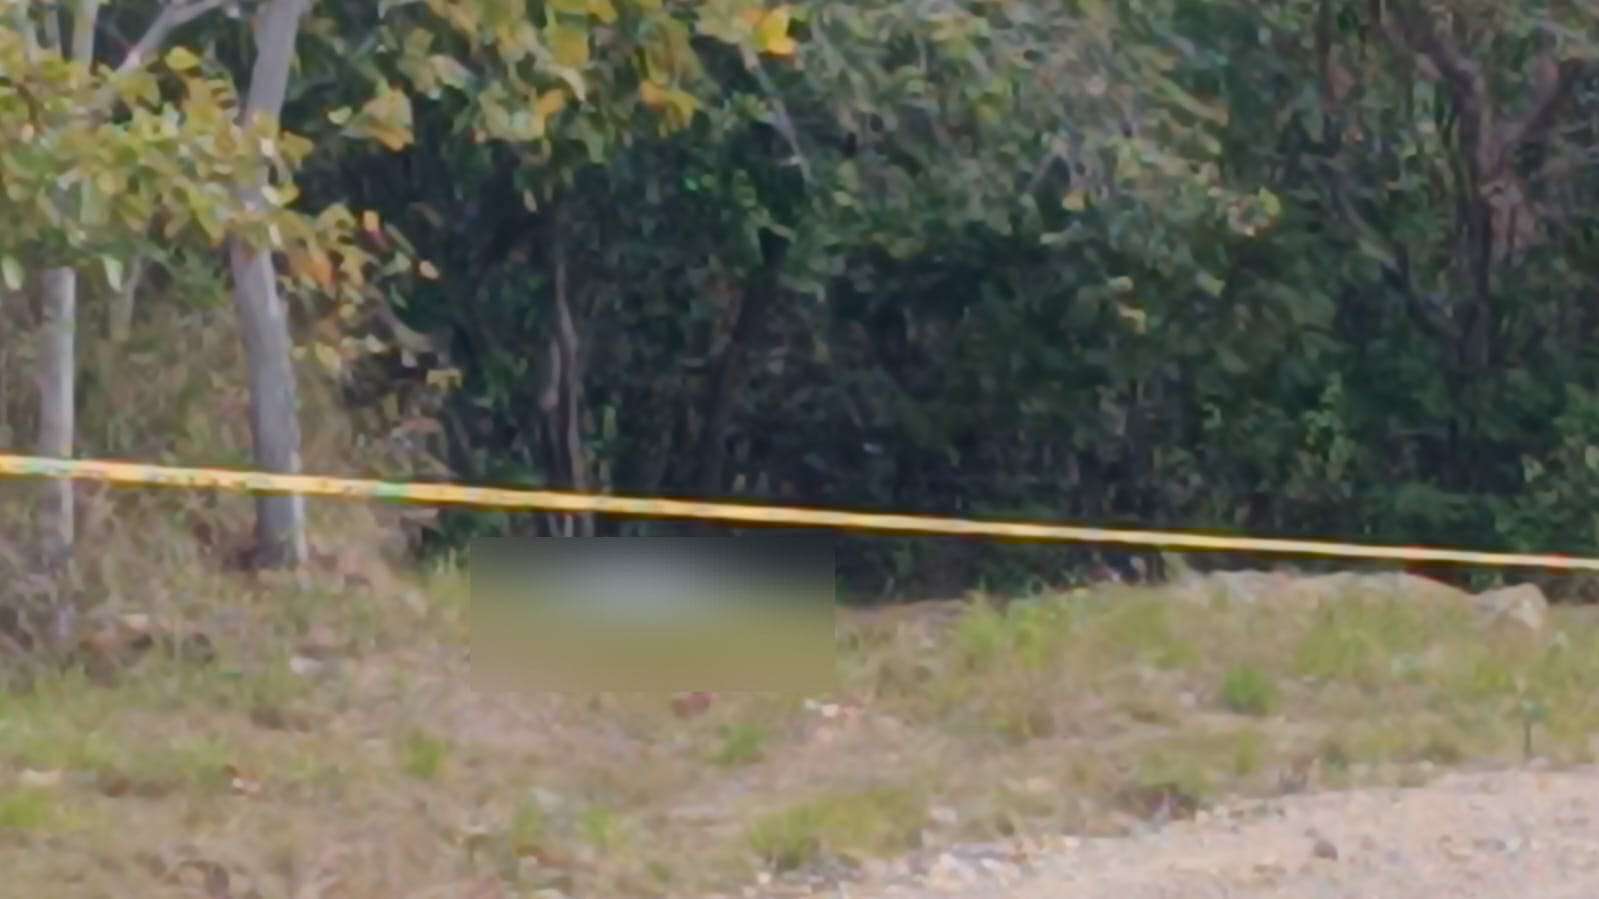 El cuerpo tirado de la mujer en el área rural.